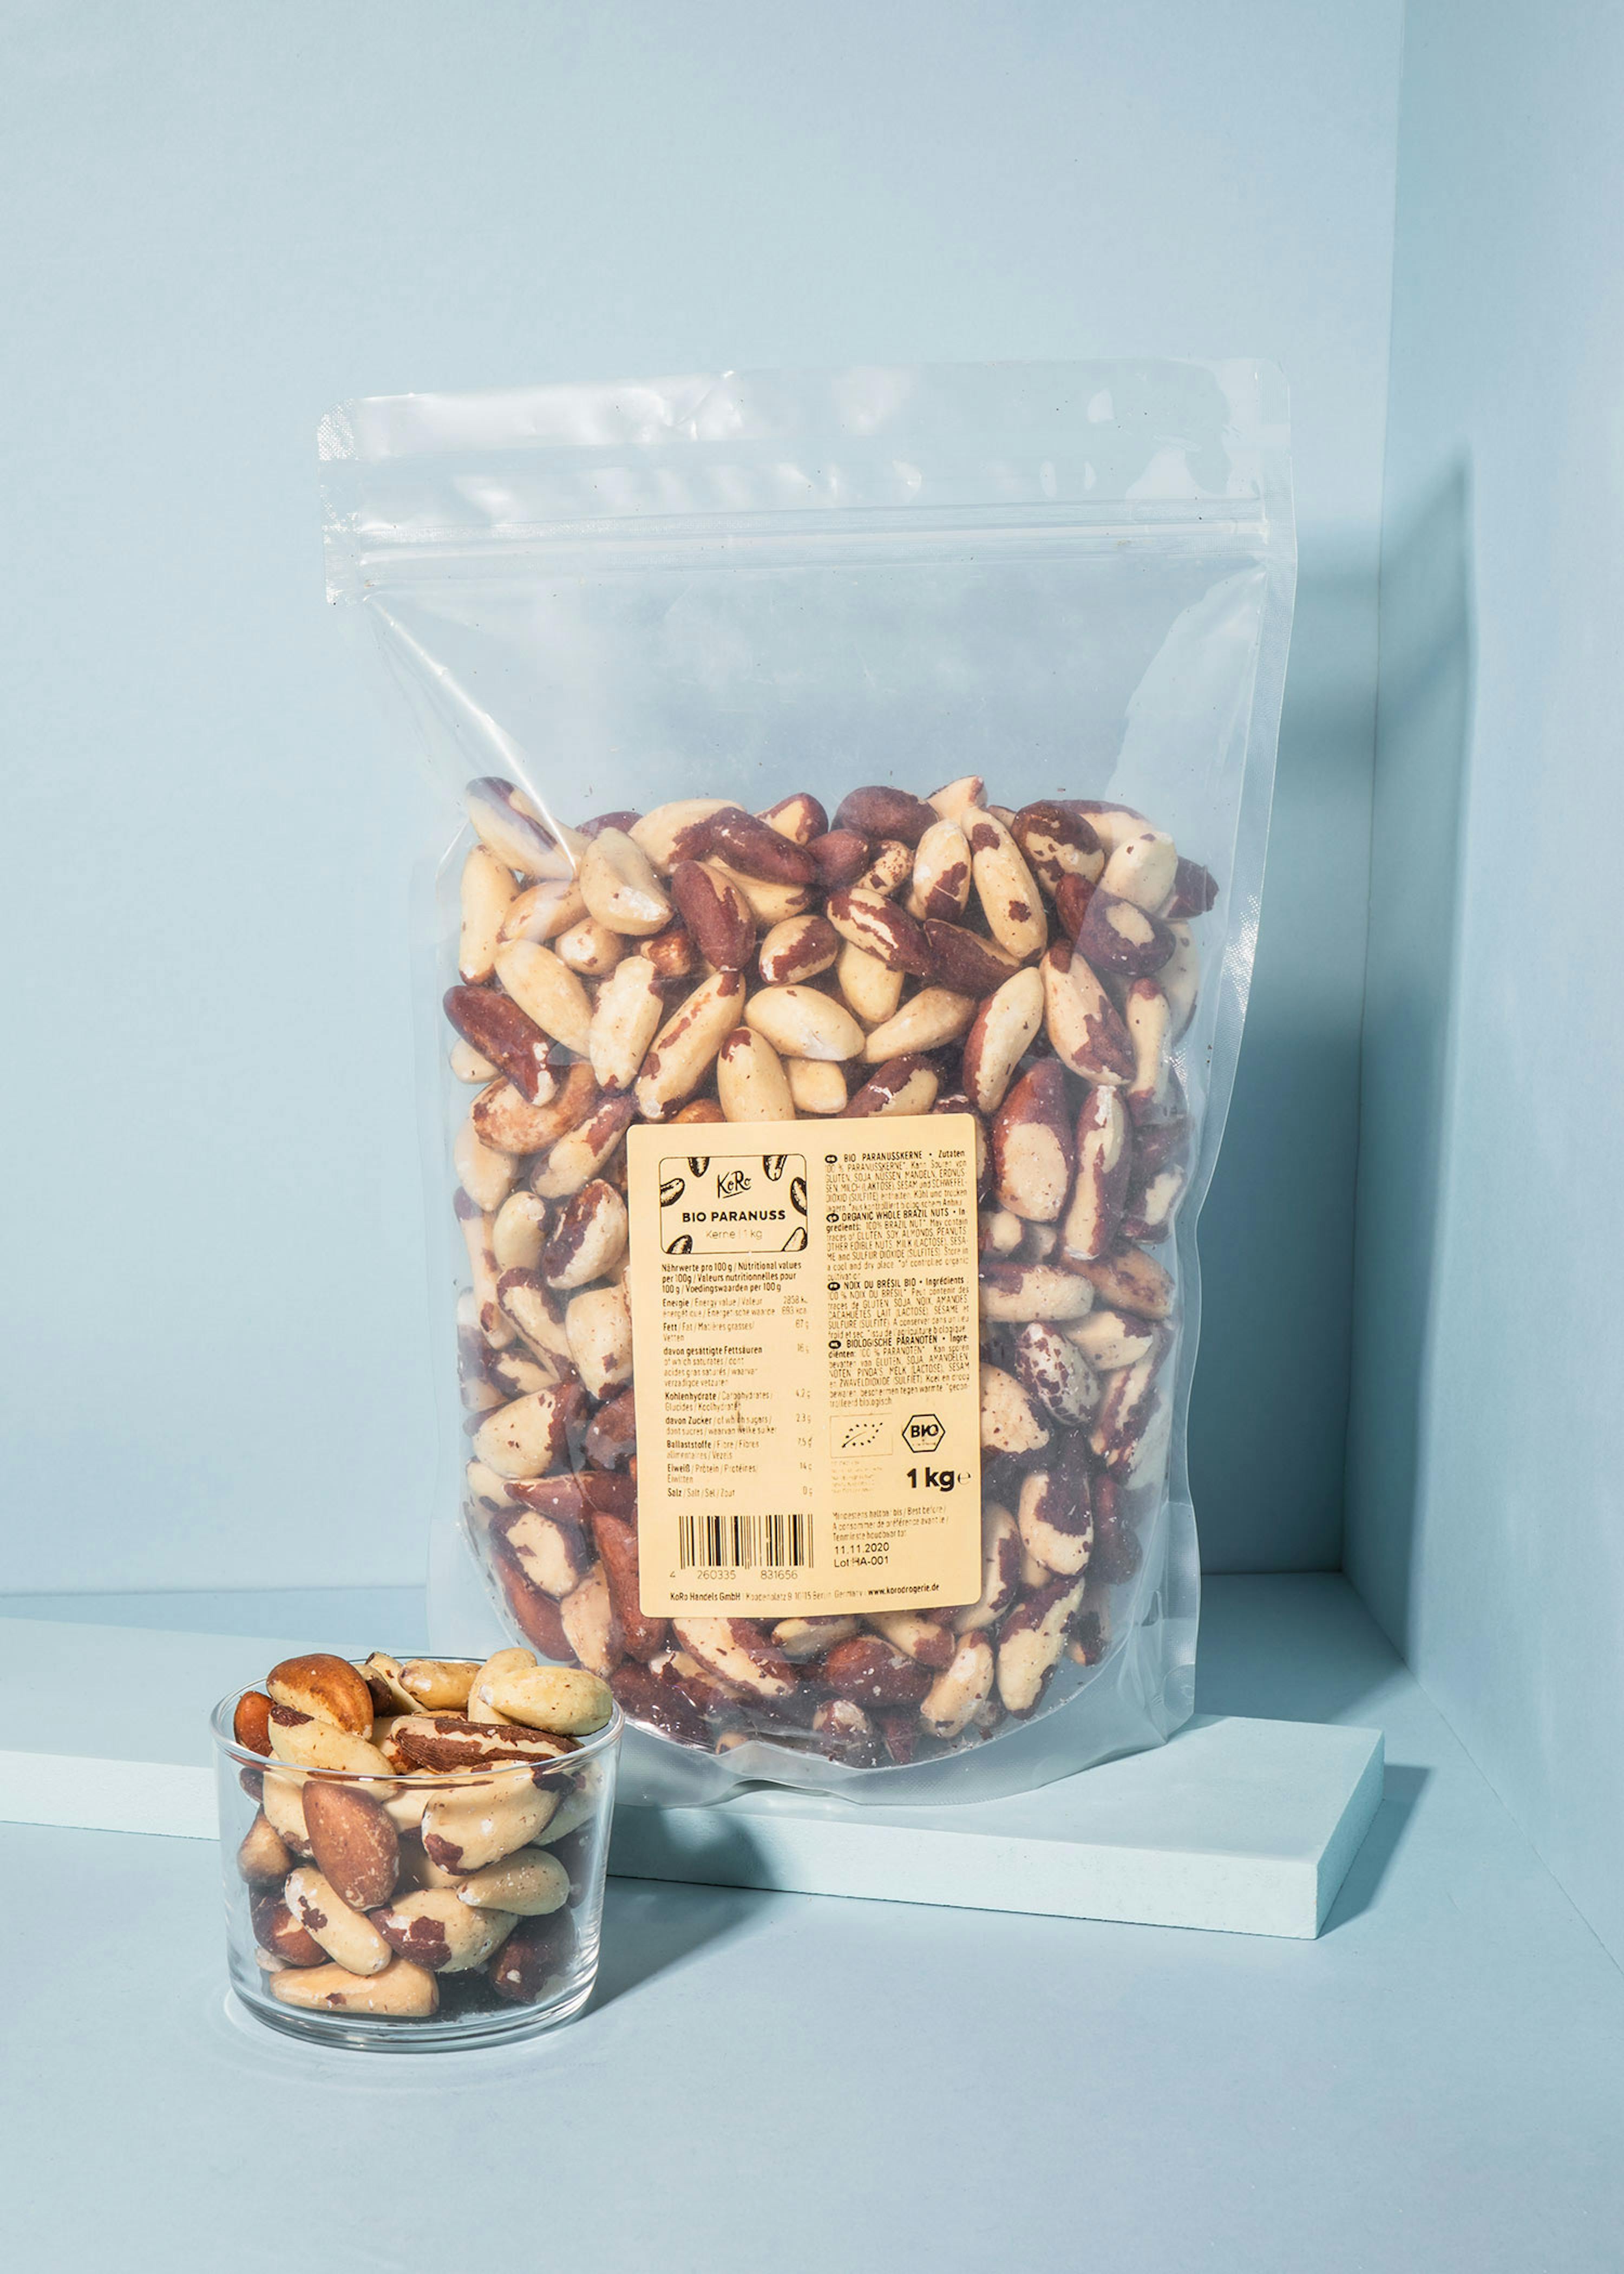 Acheter des cacahuètes grillées non salées en ligne - cueillette de noix